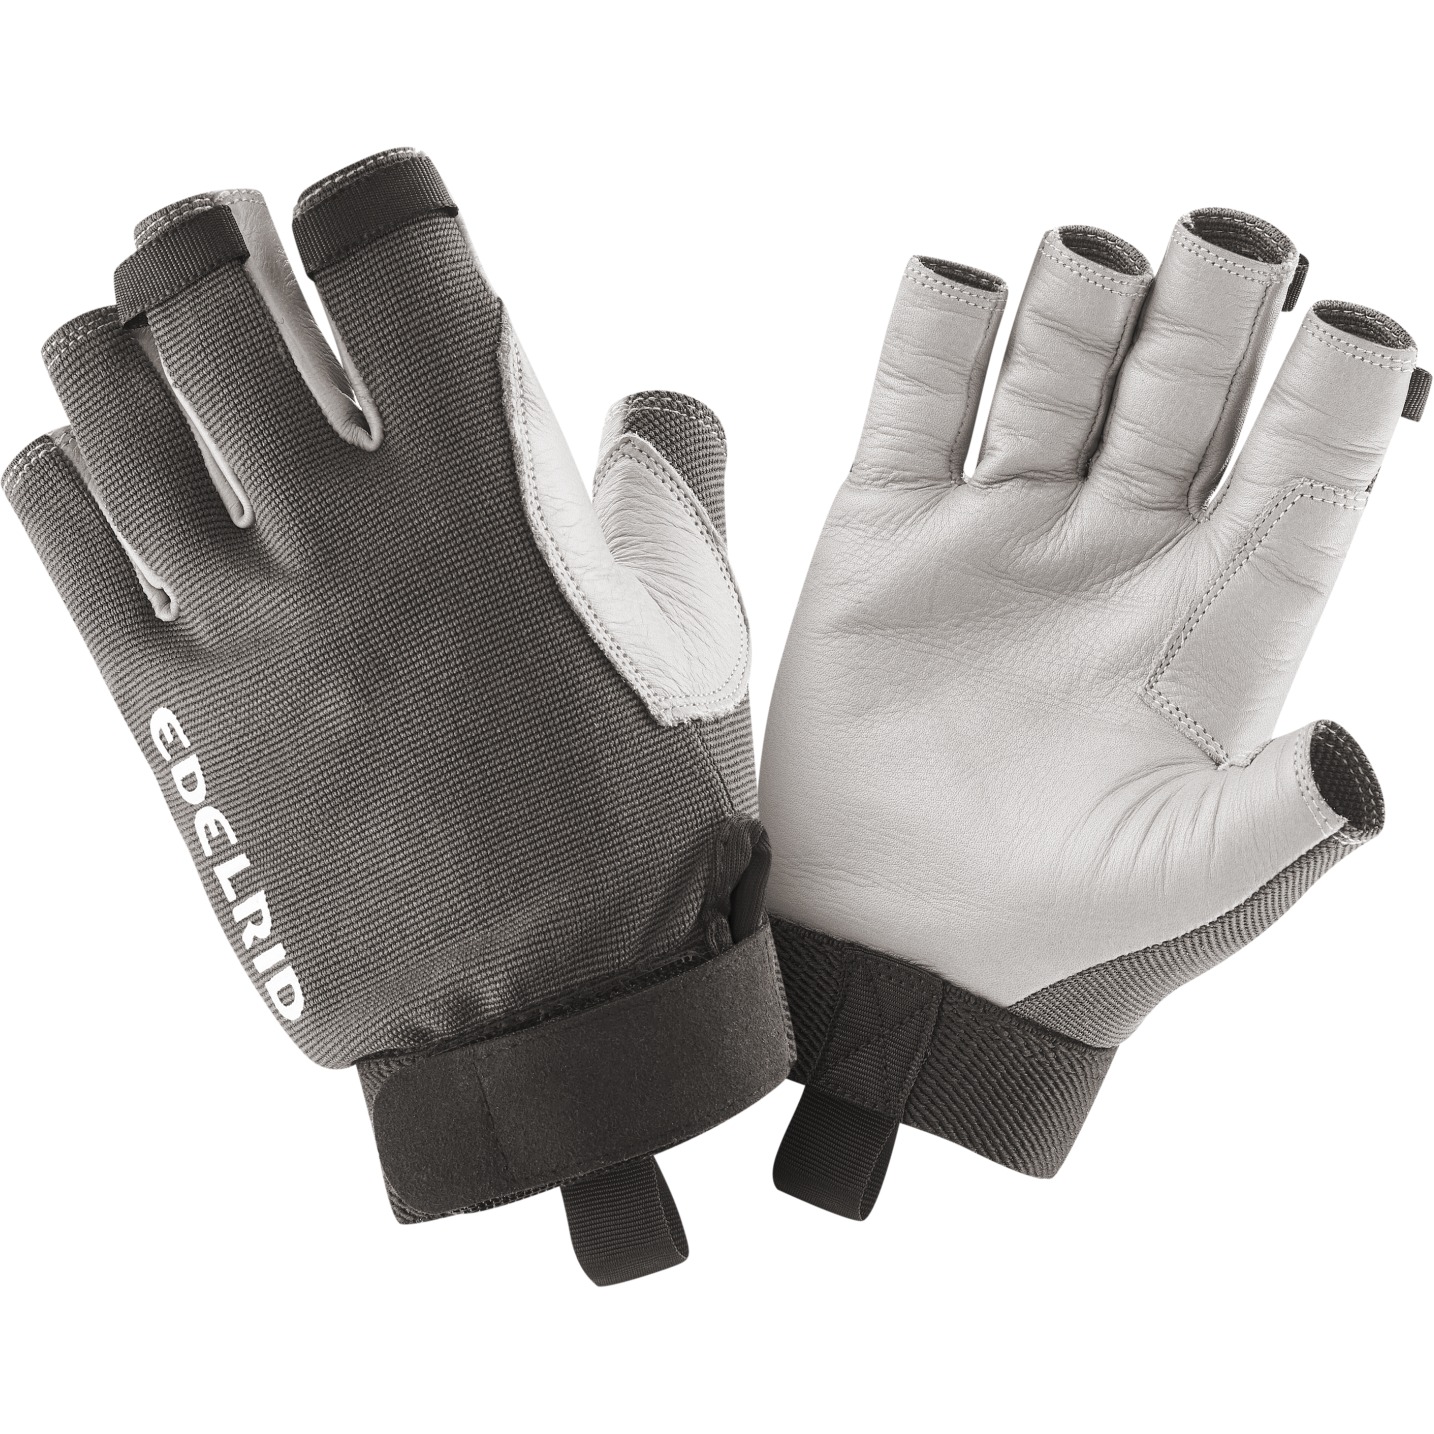 Produktbild von Edelrid Work Glove Open II Kletterhandschuhe - titan